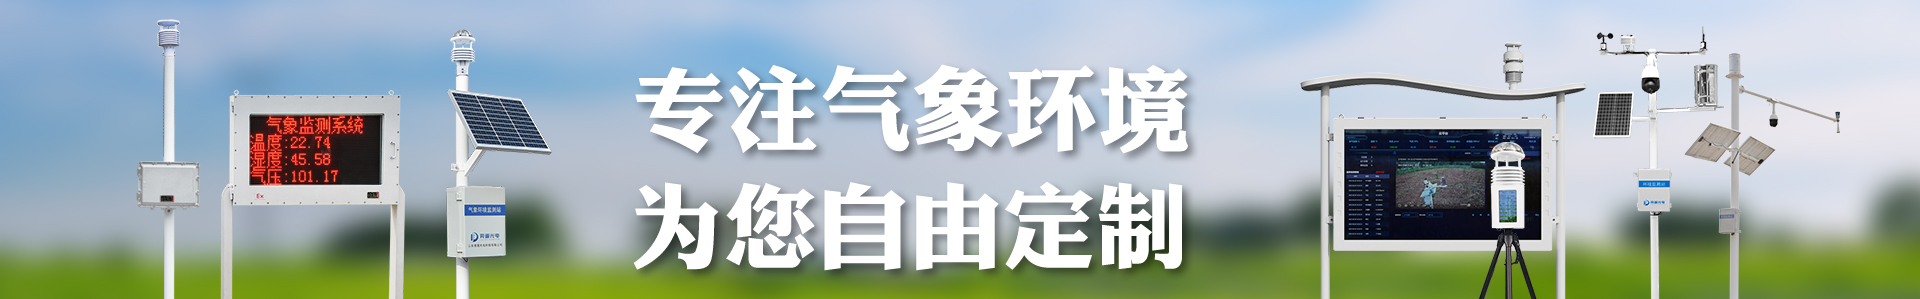 土壤墒情速测仪-自动气象站-小型气象站-防爆气象站-光伏气象站-开元旗牌·(中国)官方网站